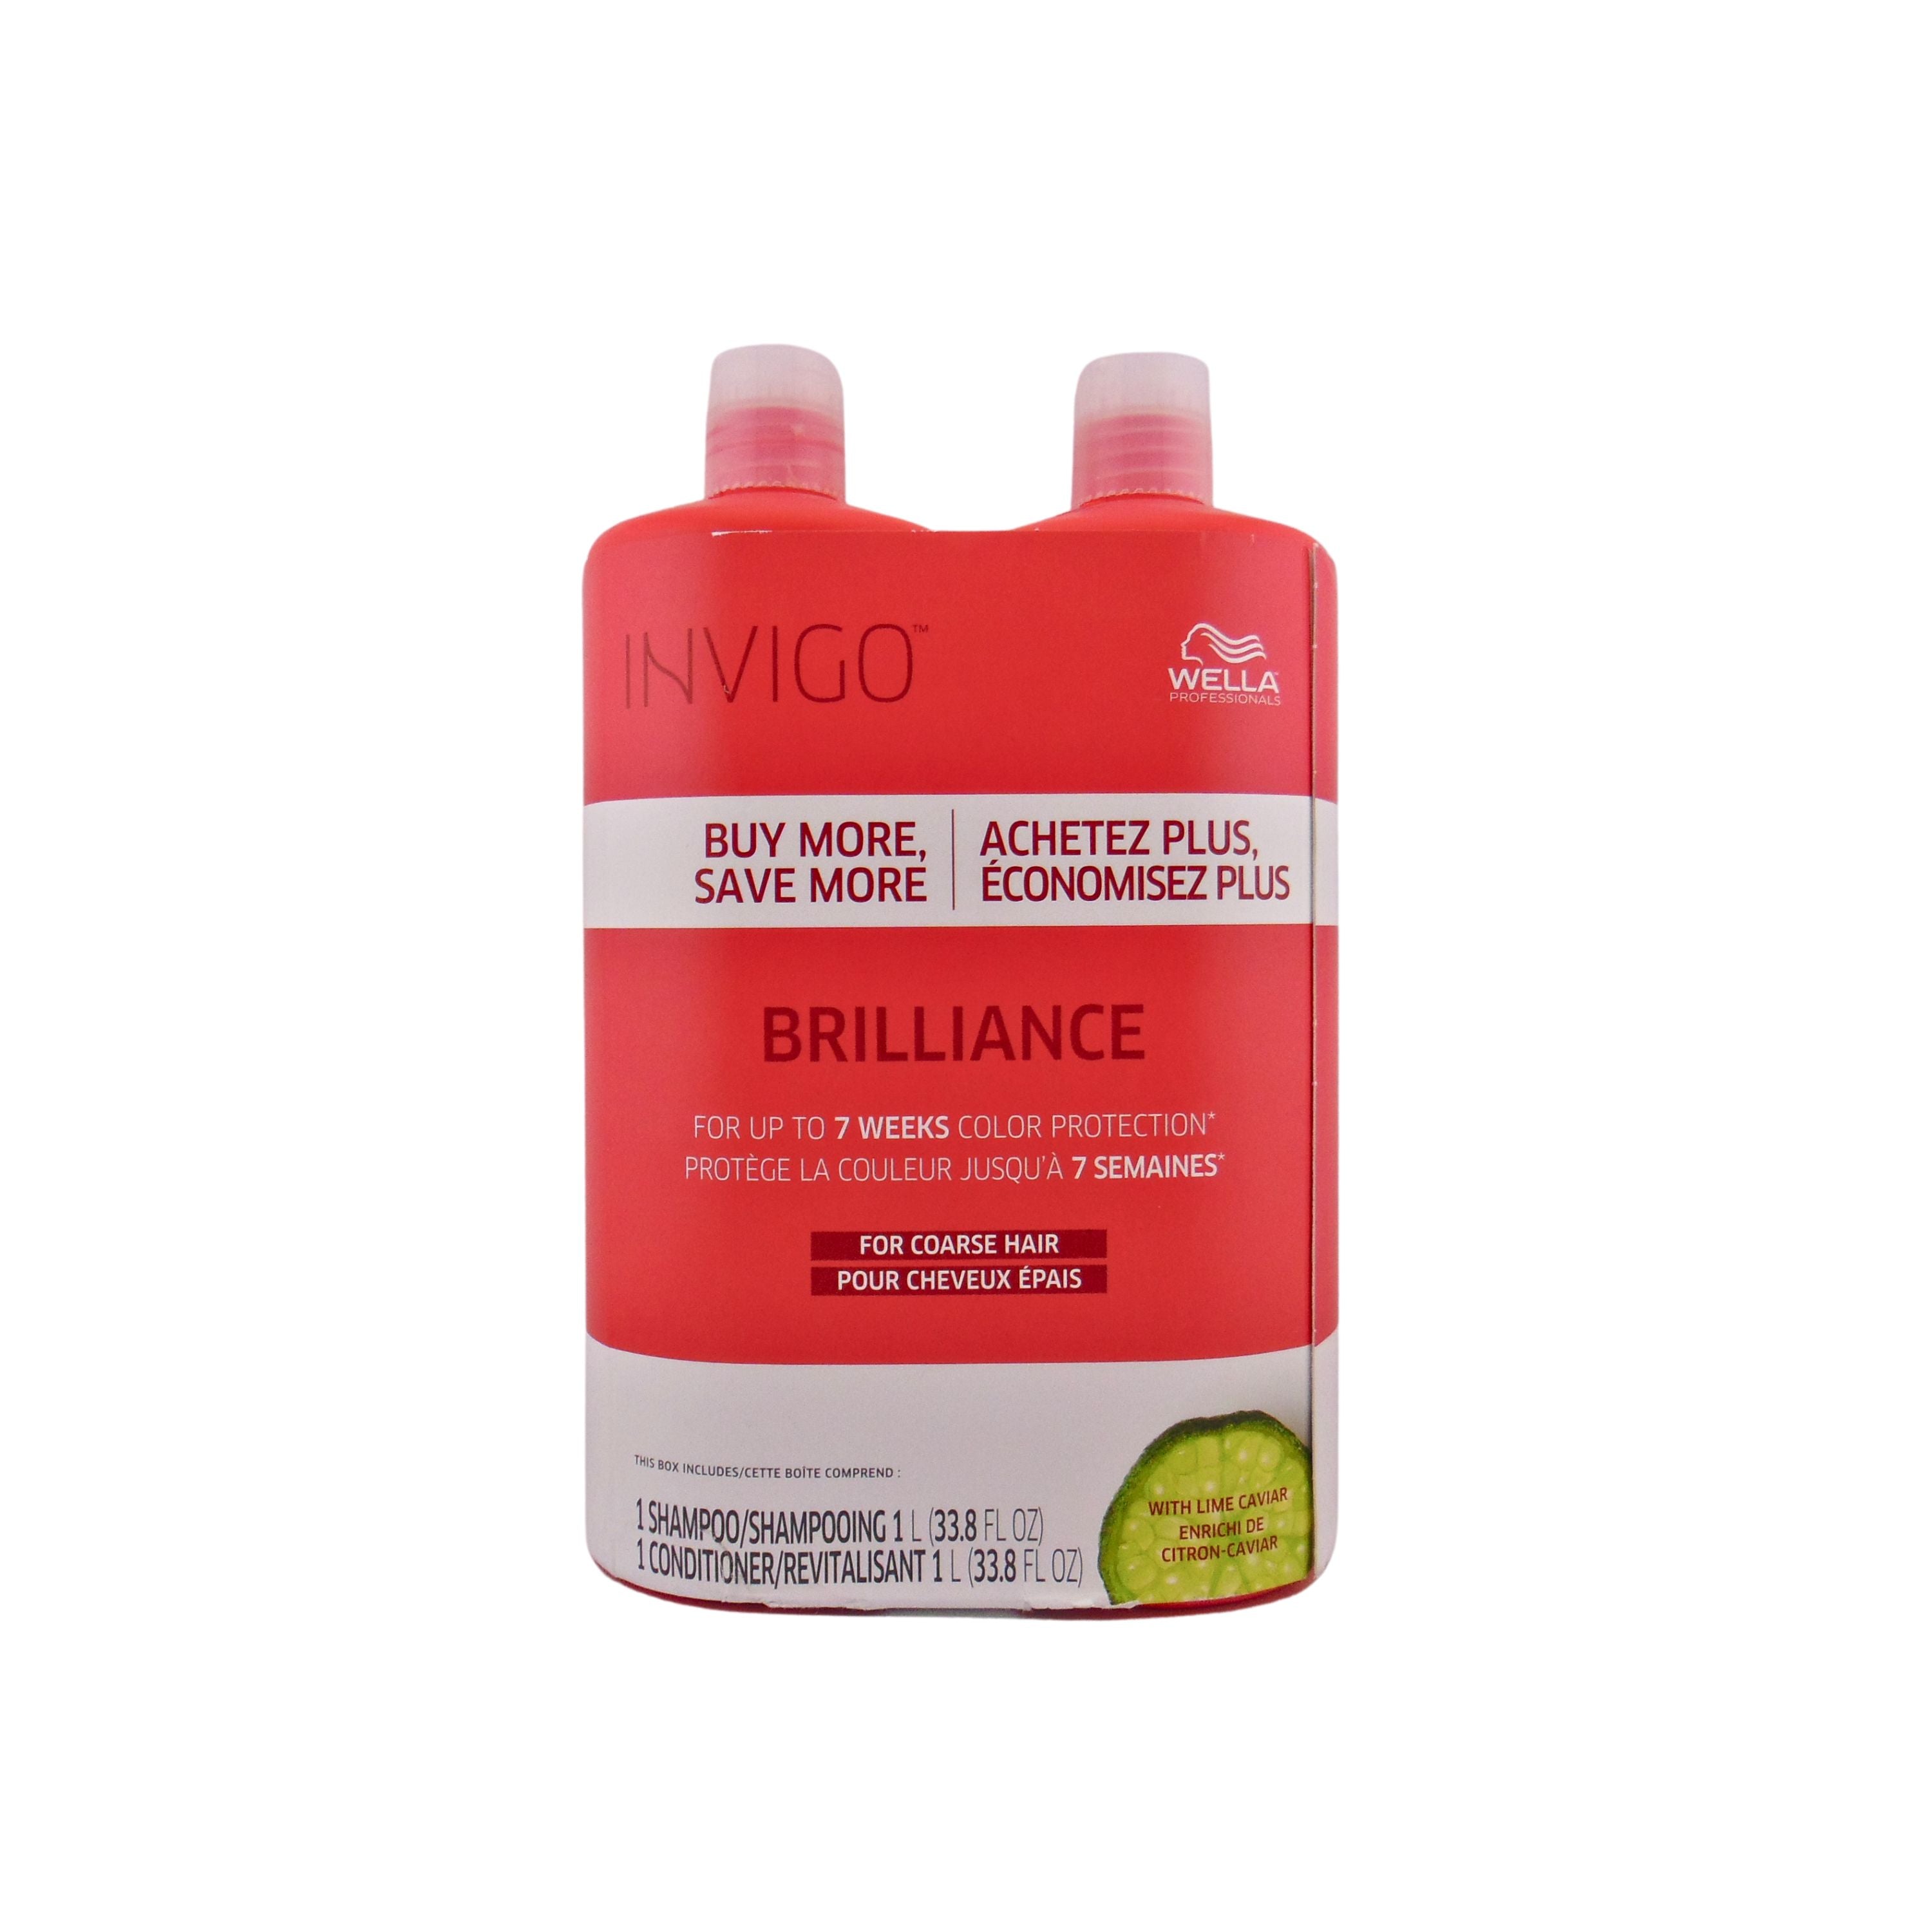 Wella Invigo Brilliance Duo for Coarse Hair (Shampoo and Conditioner)